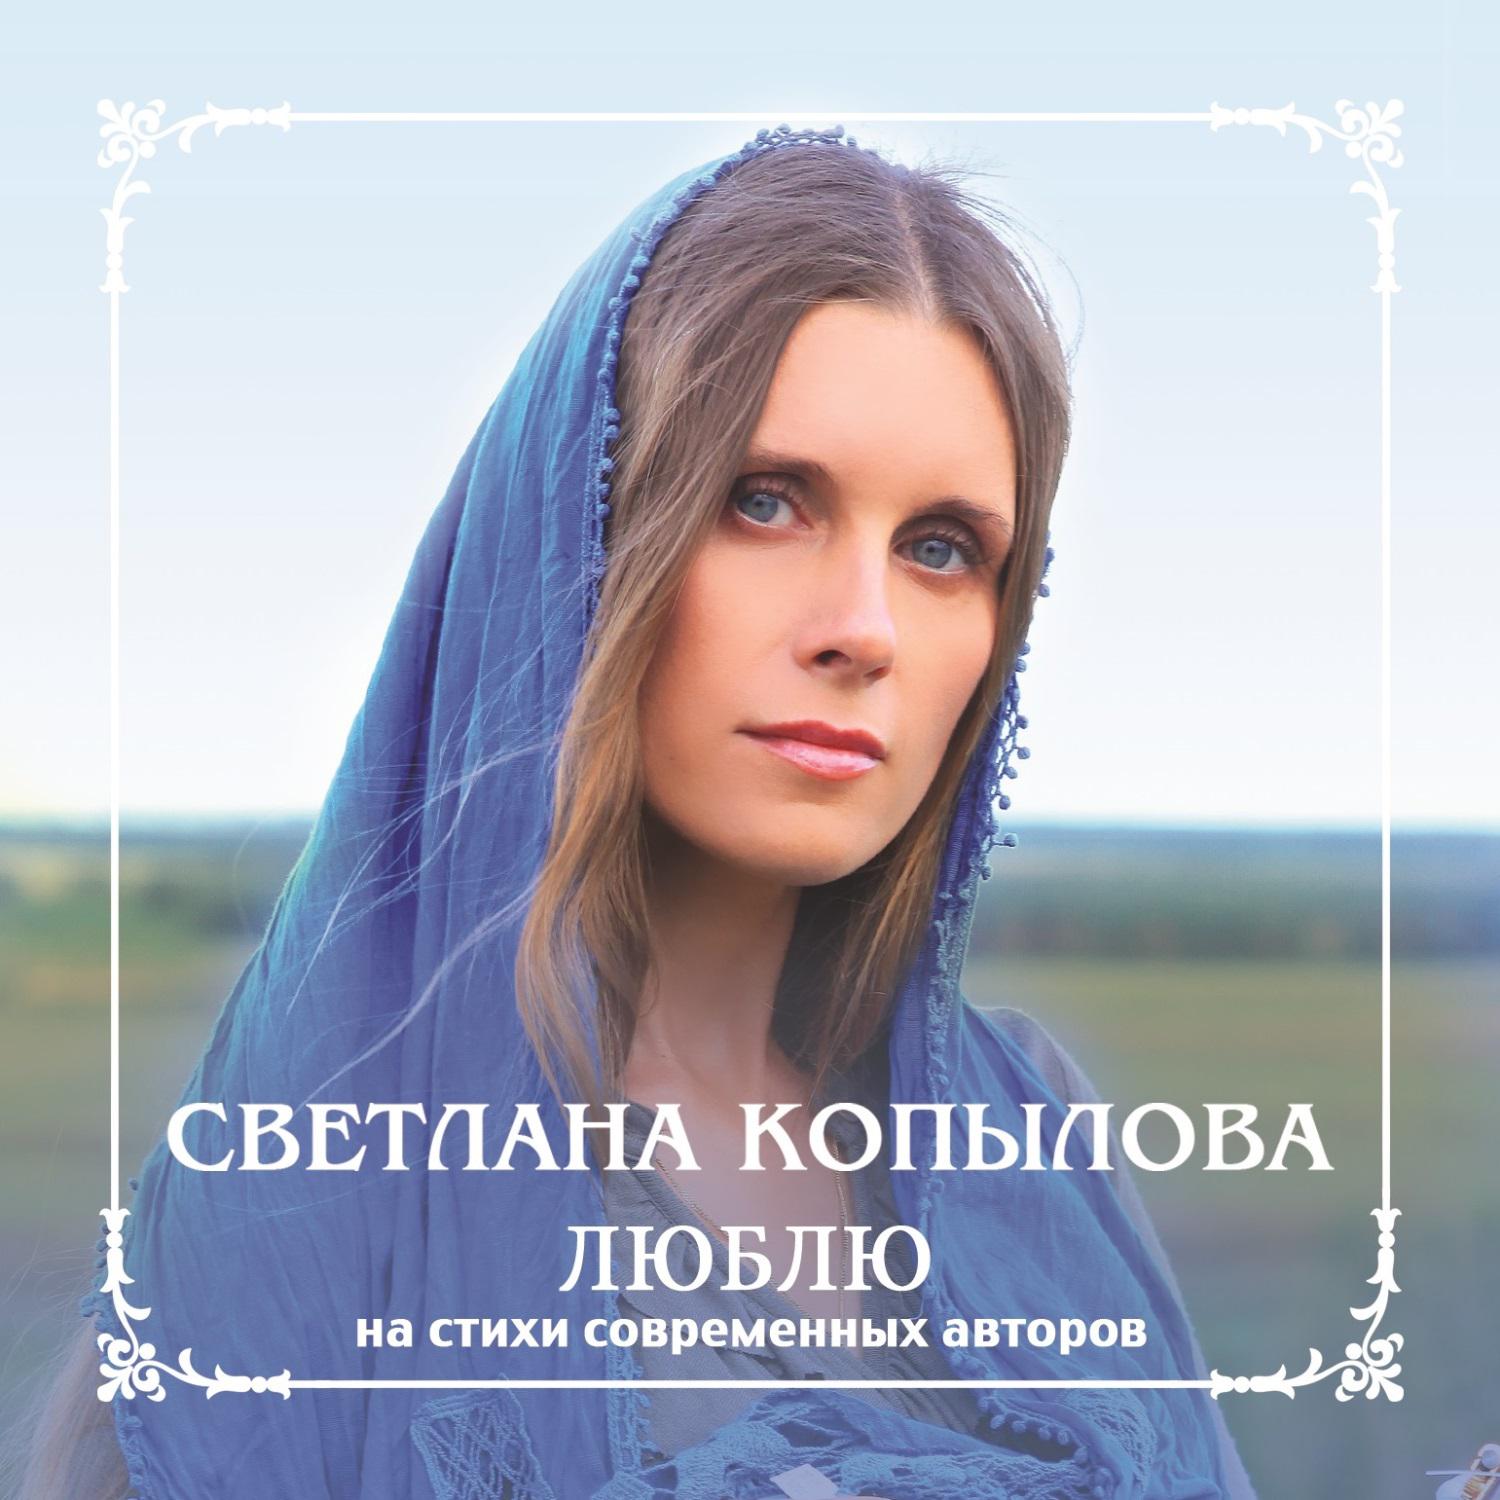 Арго православные песни слушать